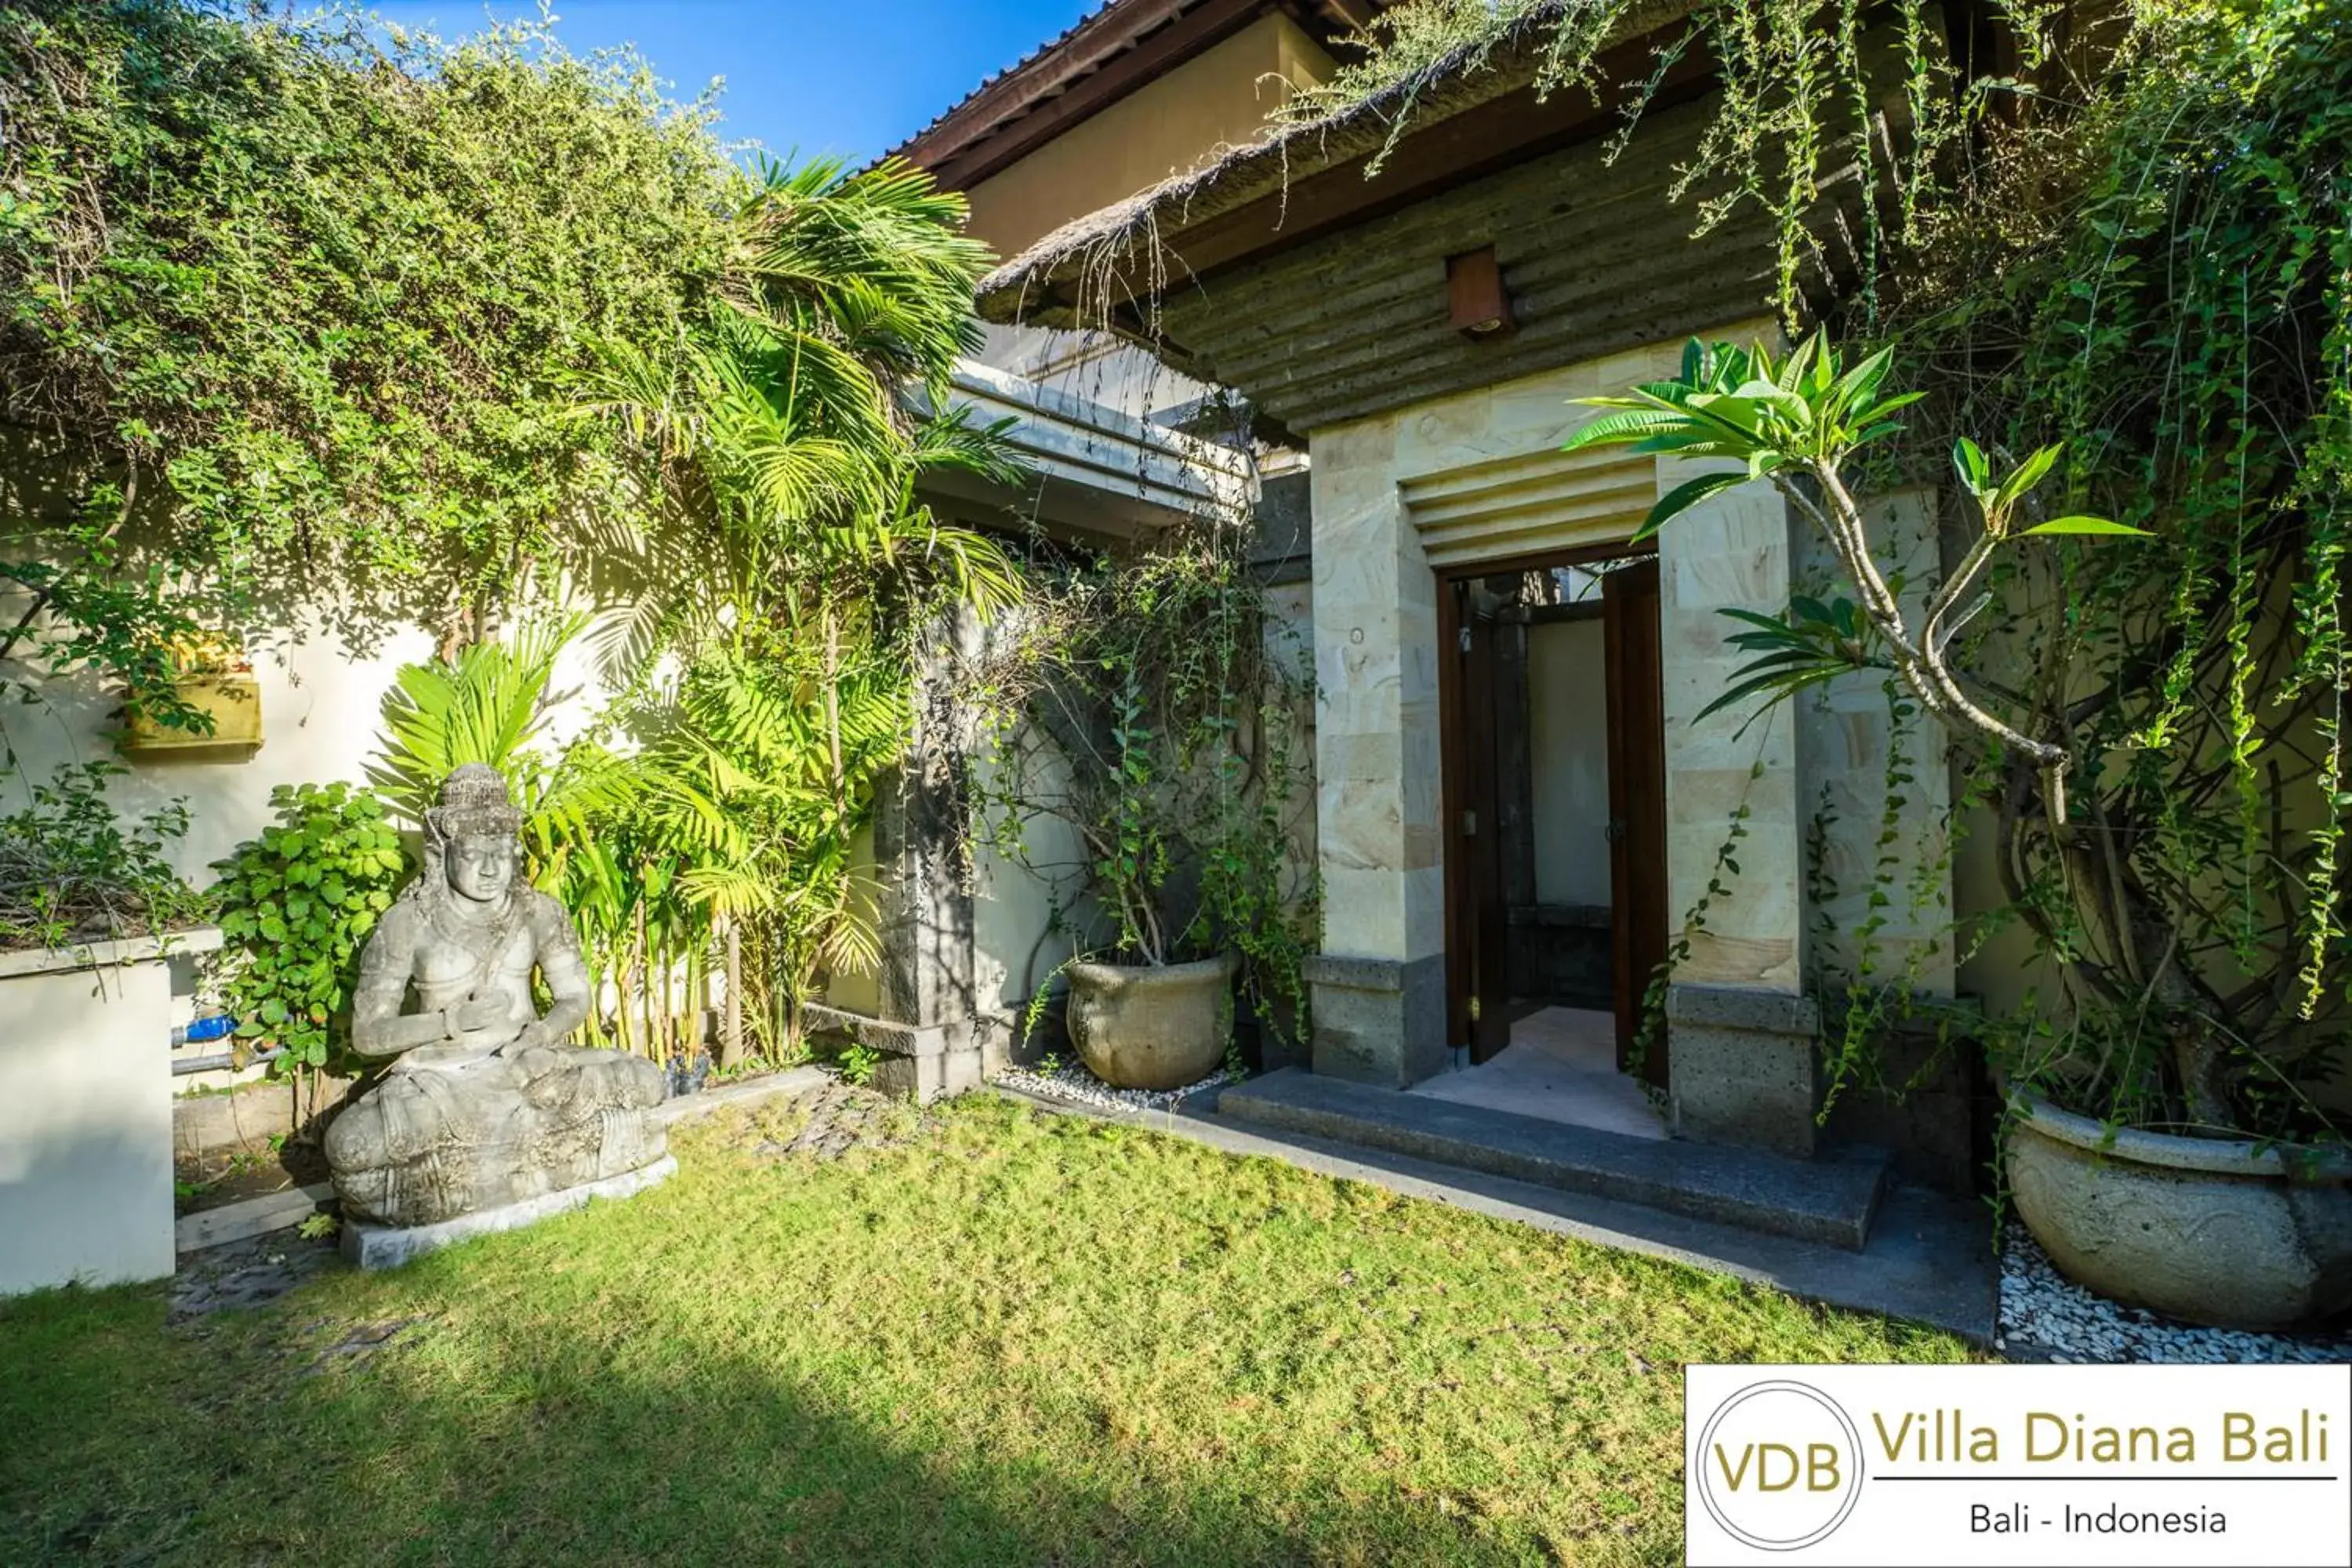 Facade/entrance in Villa Diana Bali